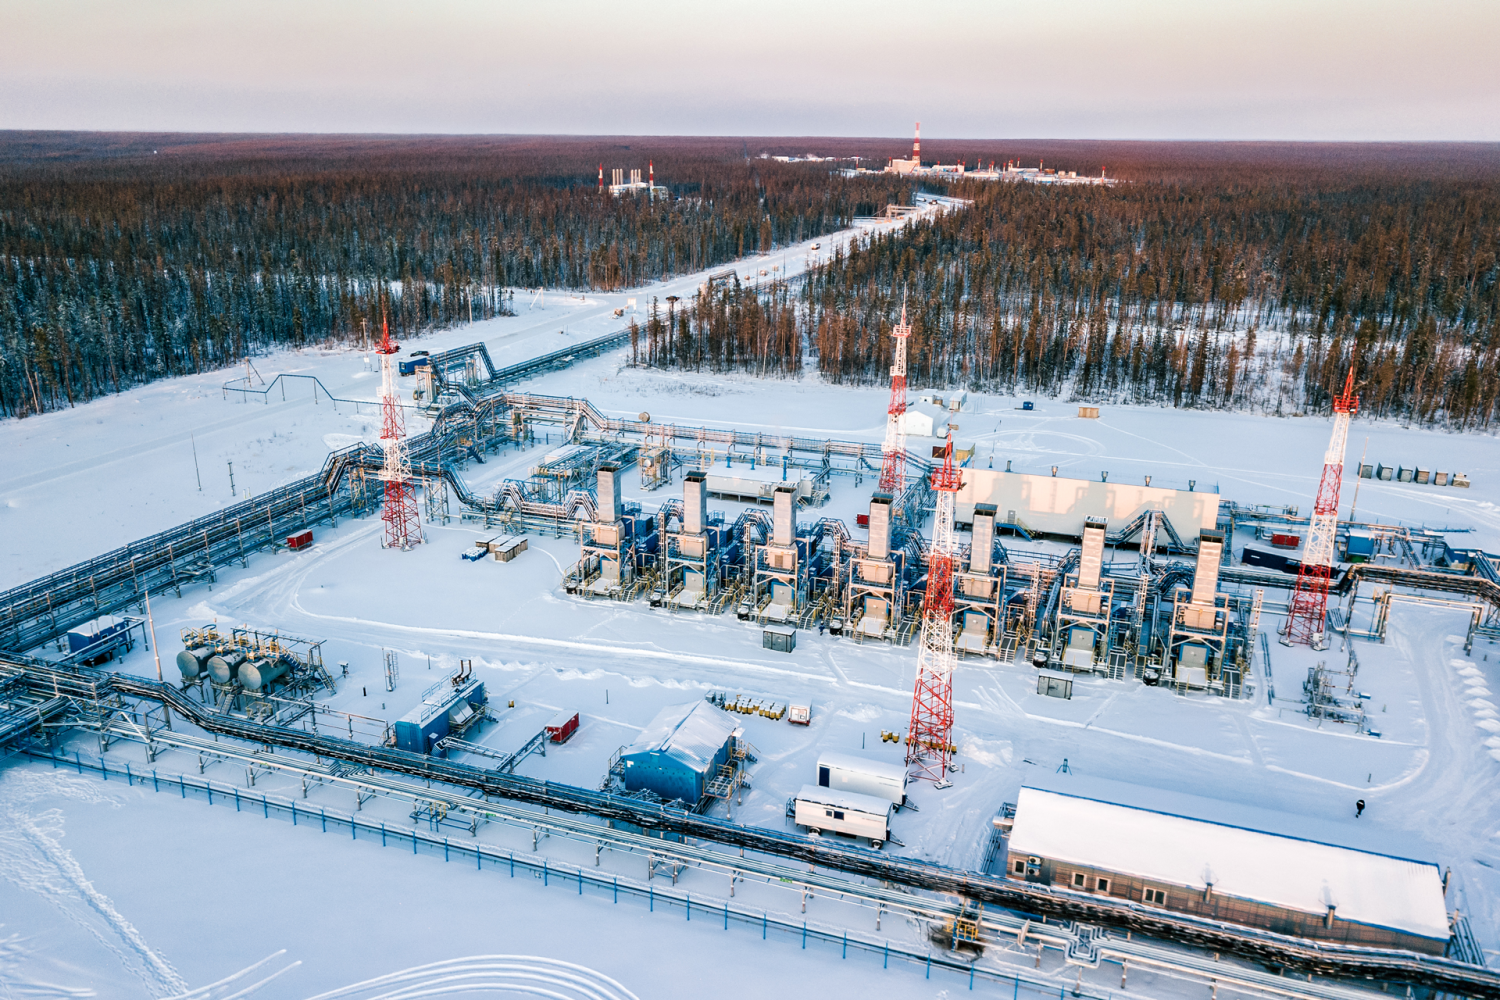 Đặc điểm pháp lý nổi bật trong qui định đối với việc sử dụng tài nguyên dầu và khí của Liên bang Nga (Phần VI)